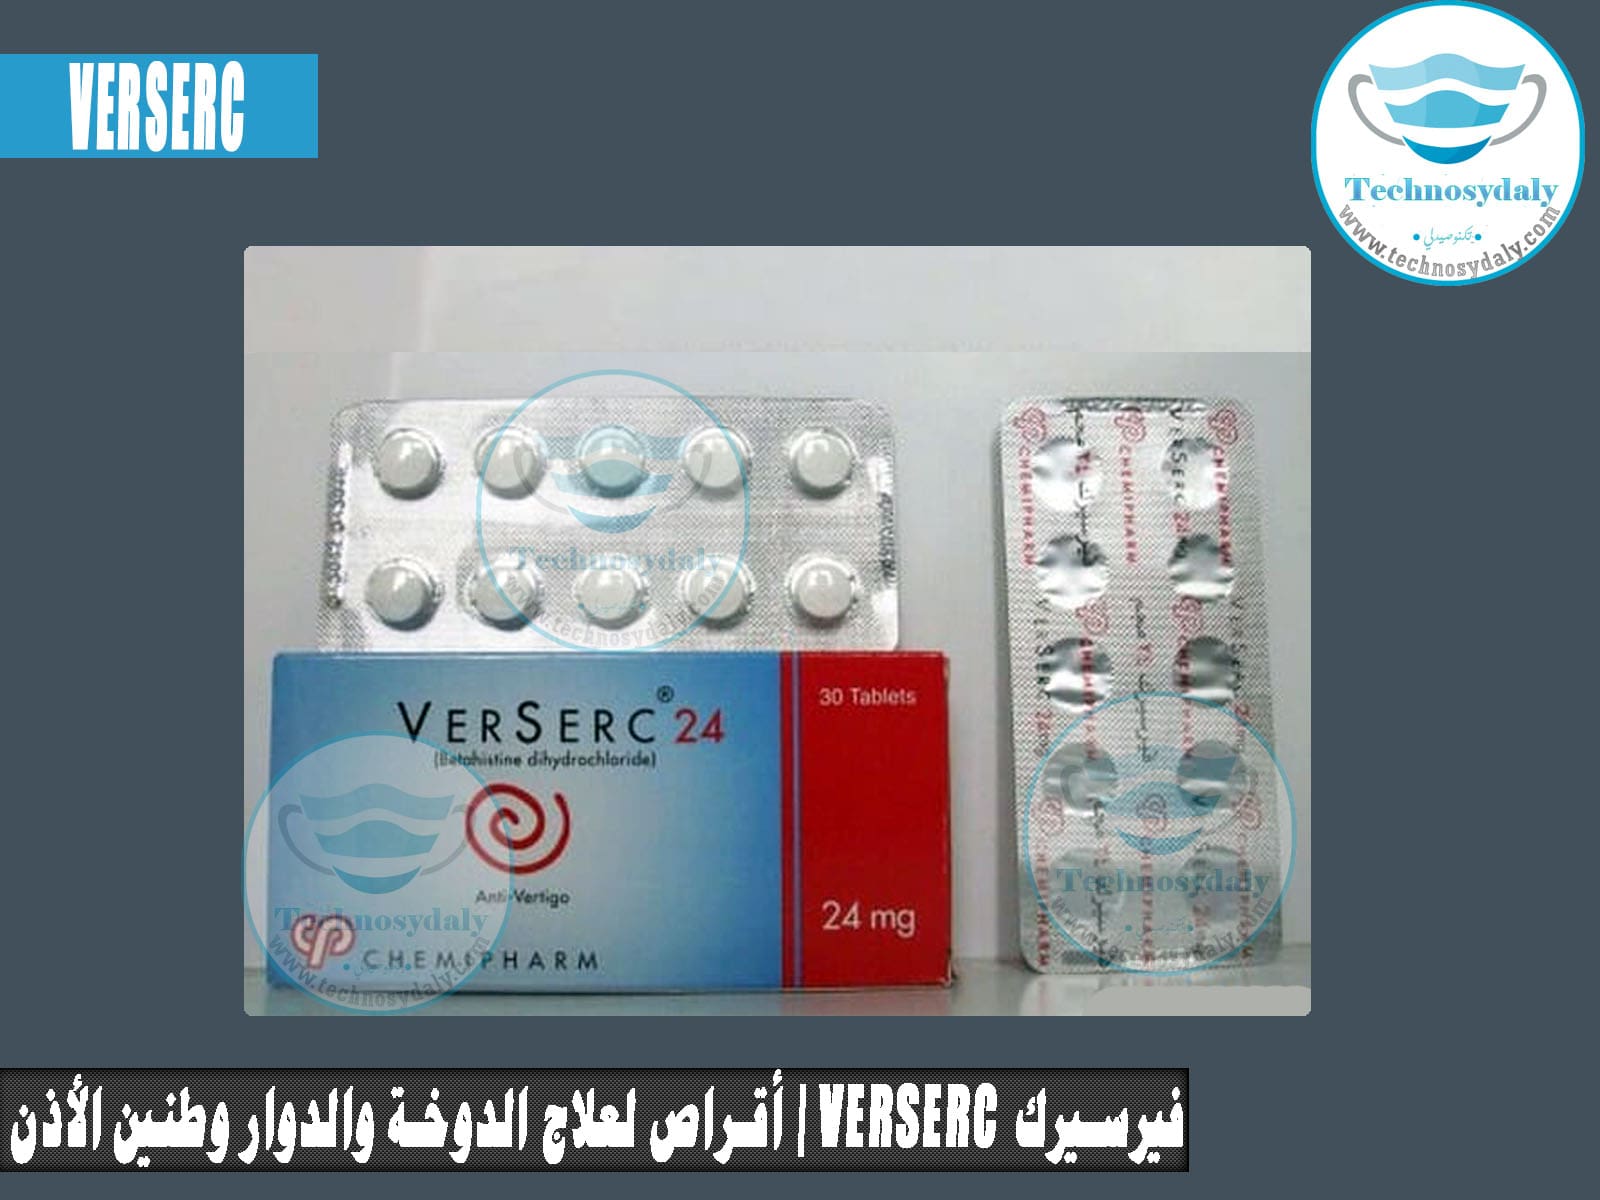 فيرسيرك Verserc أقراص لعلاج الدوخة والدوار وطنين الأذن